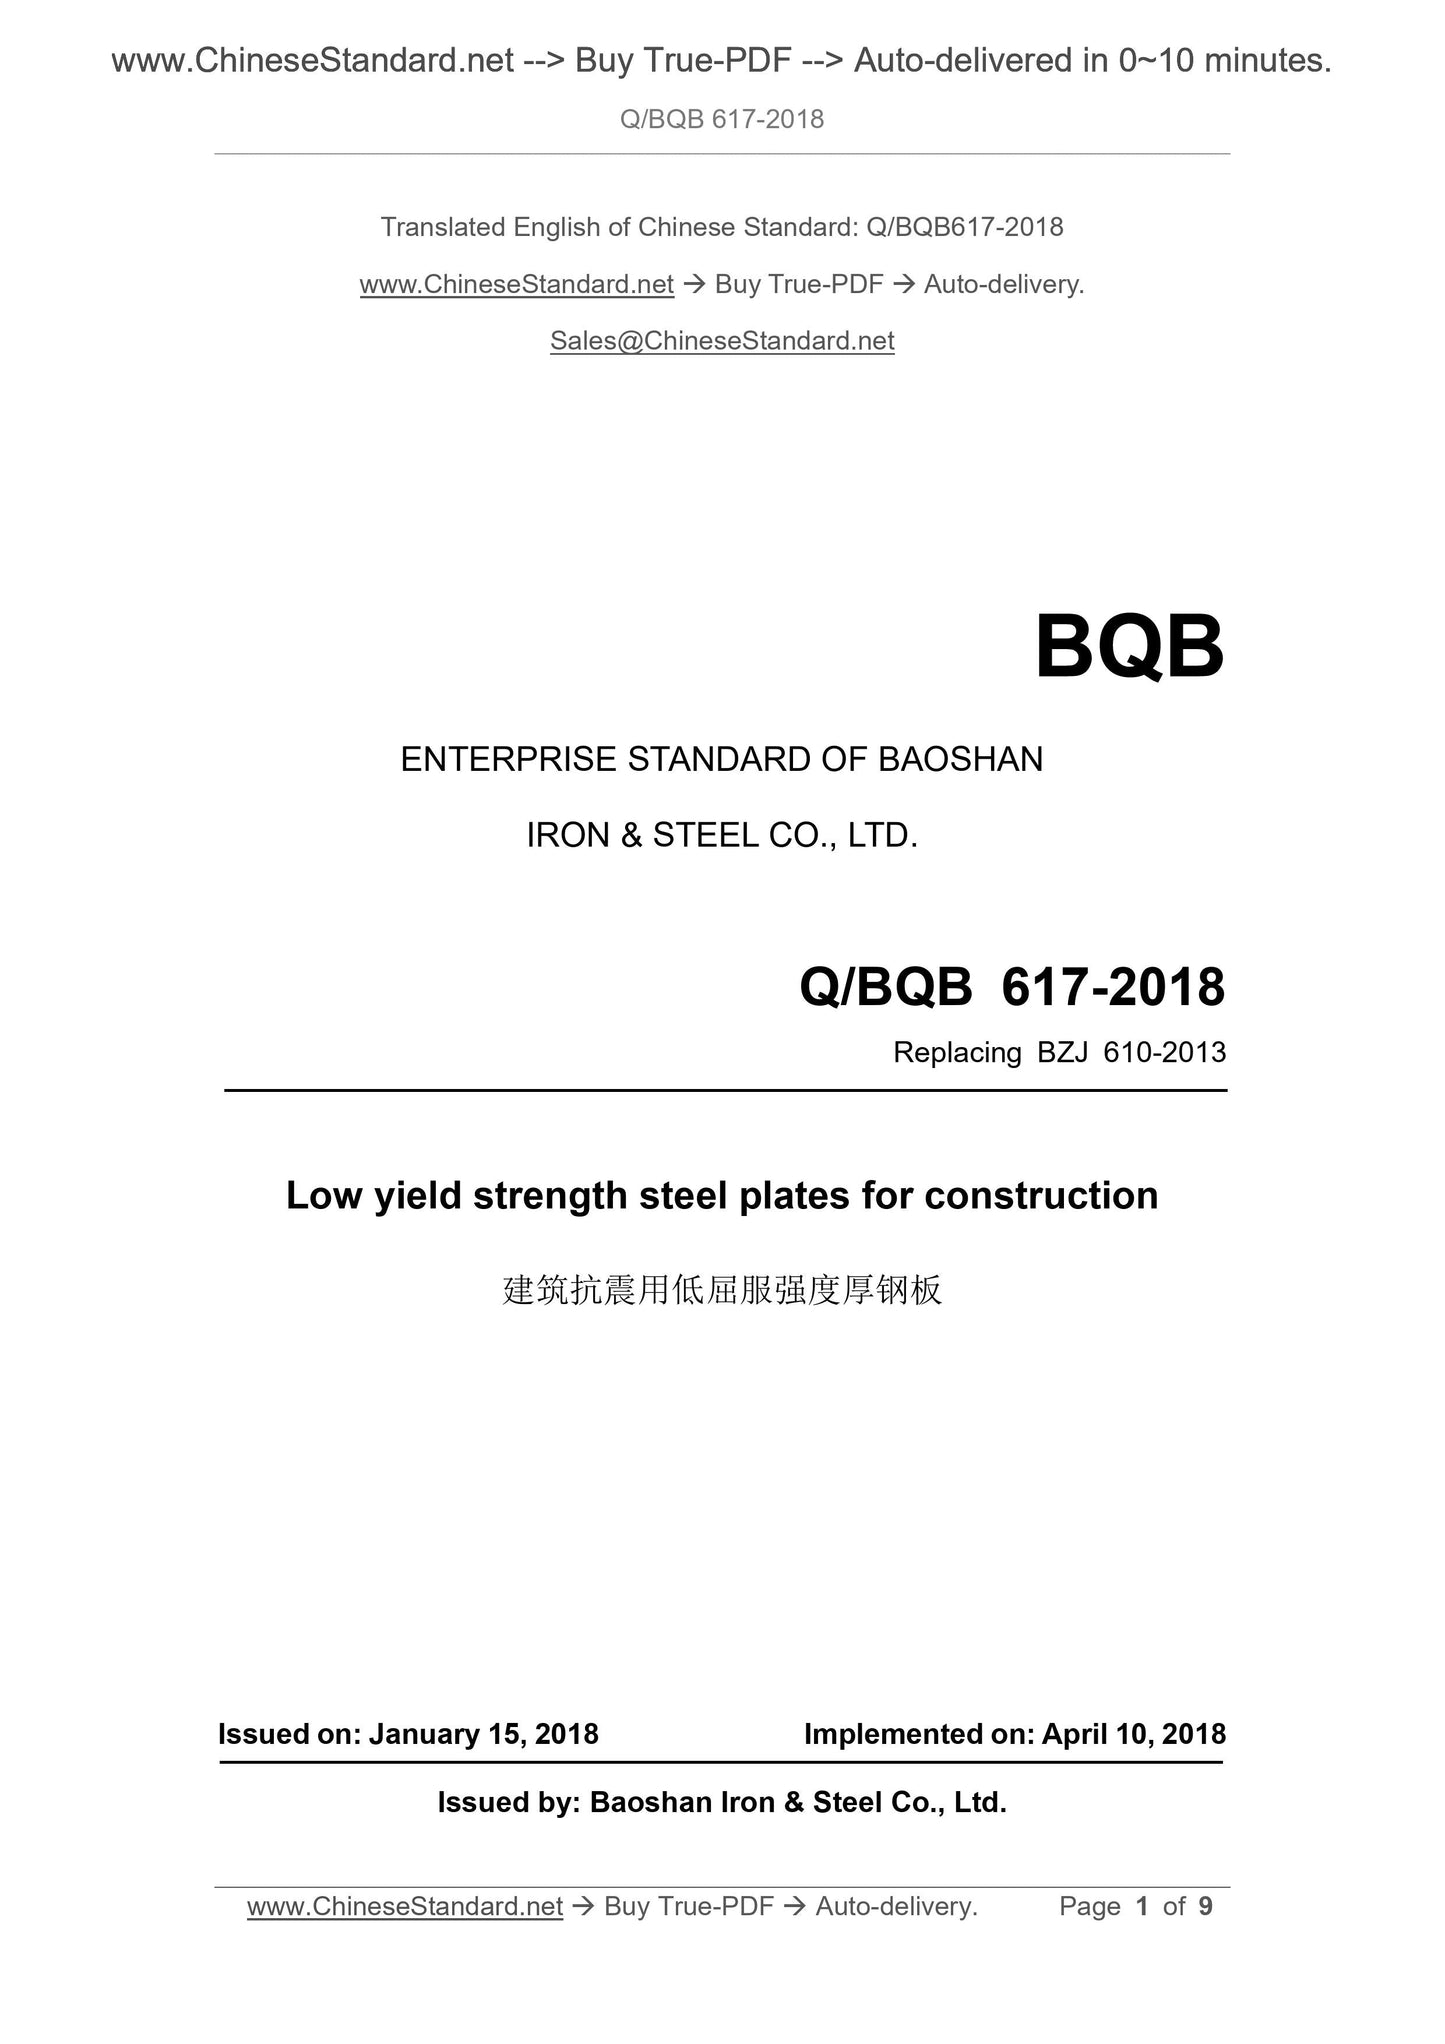 Q/BQB 617-2018 Page 1